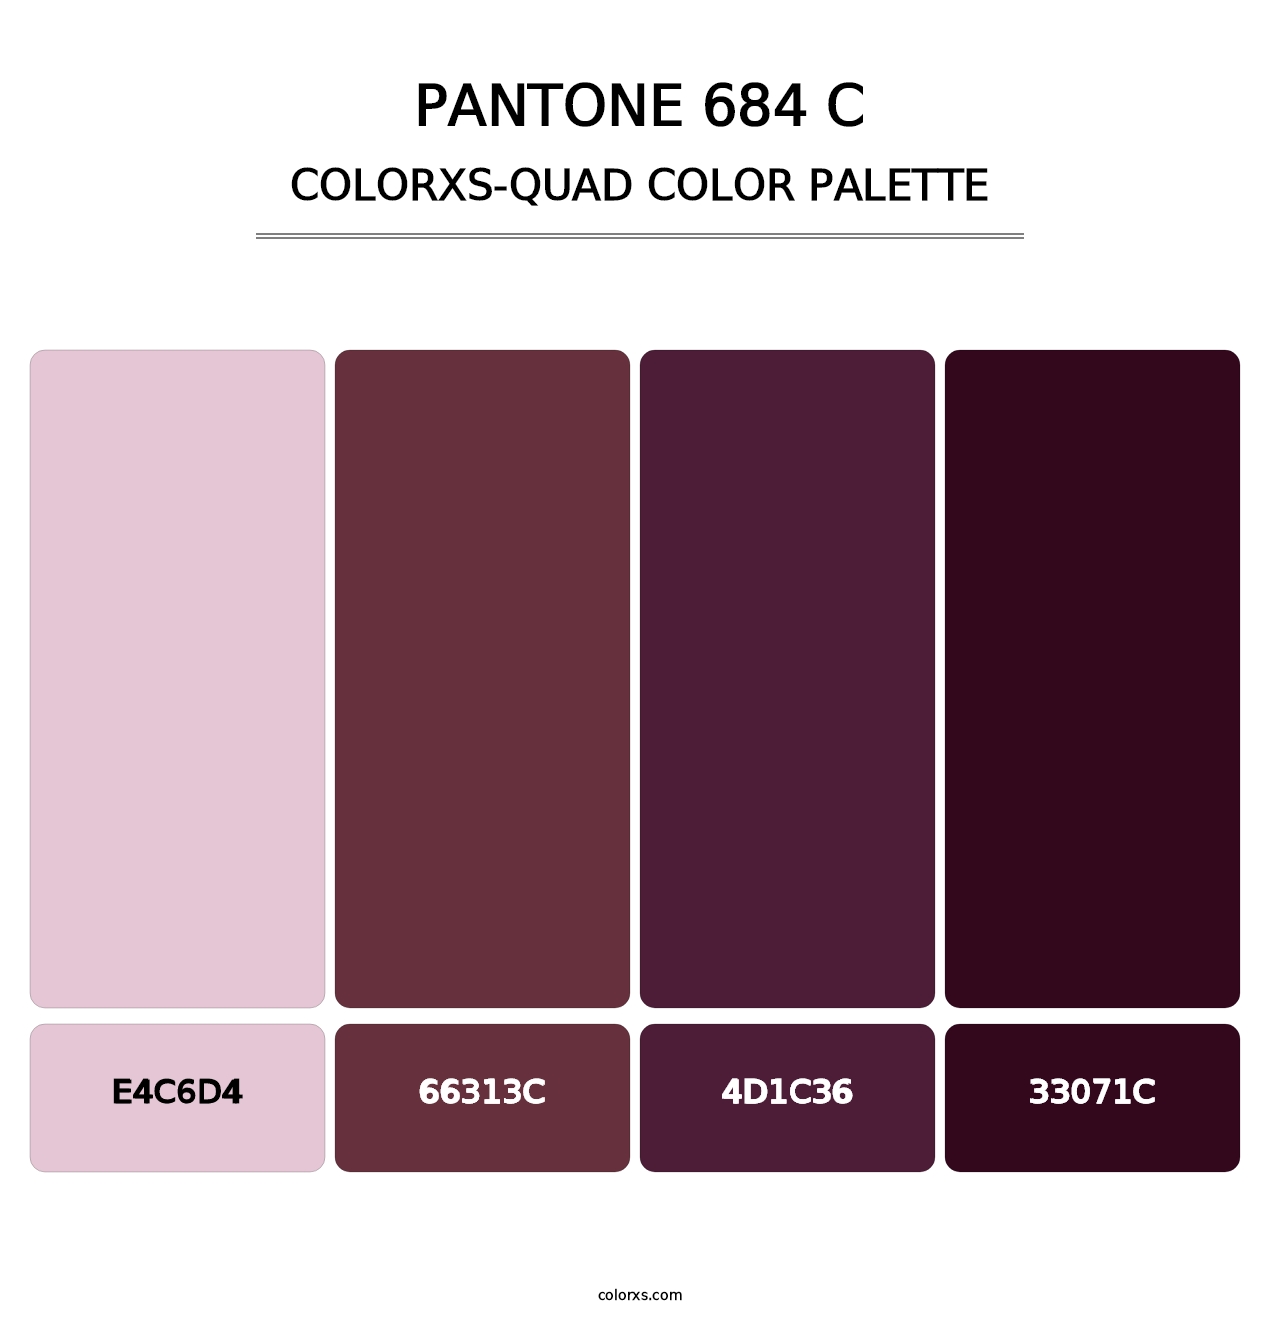 PANTONE 684 C - Colorxs Quad Palette